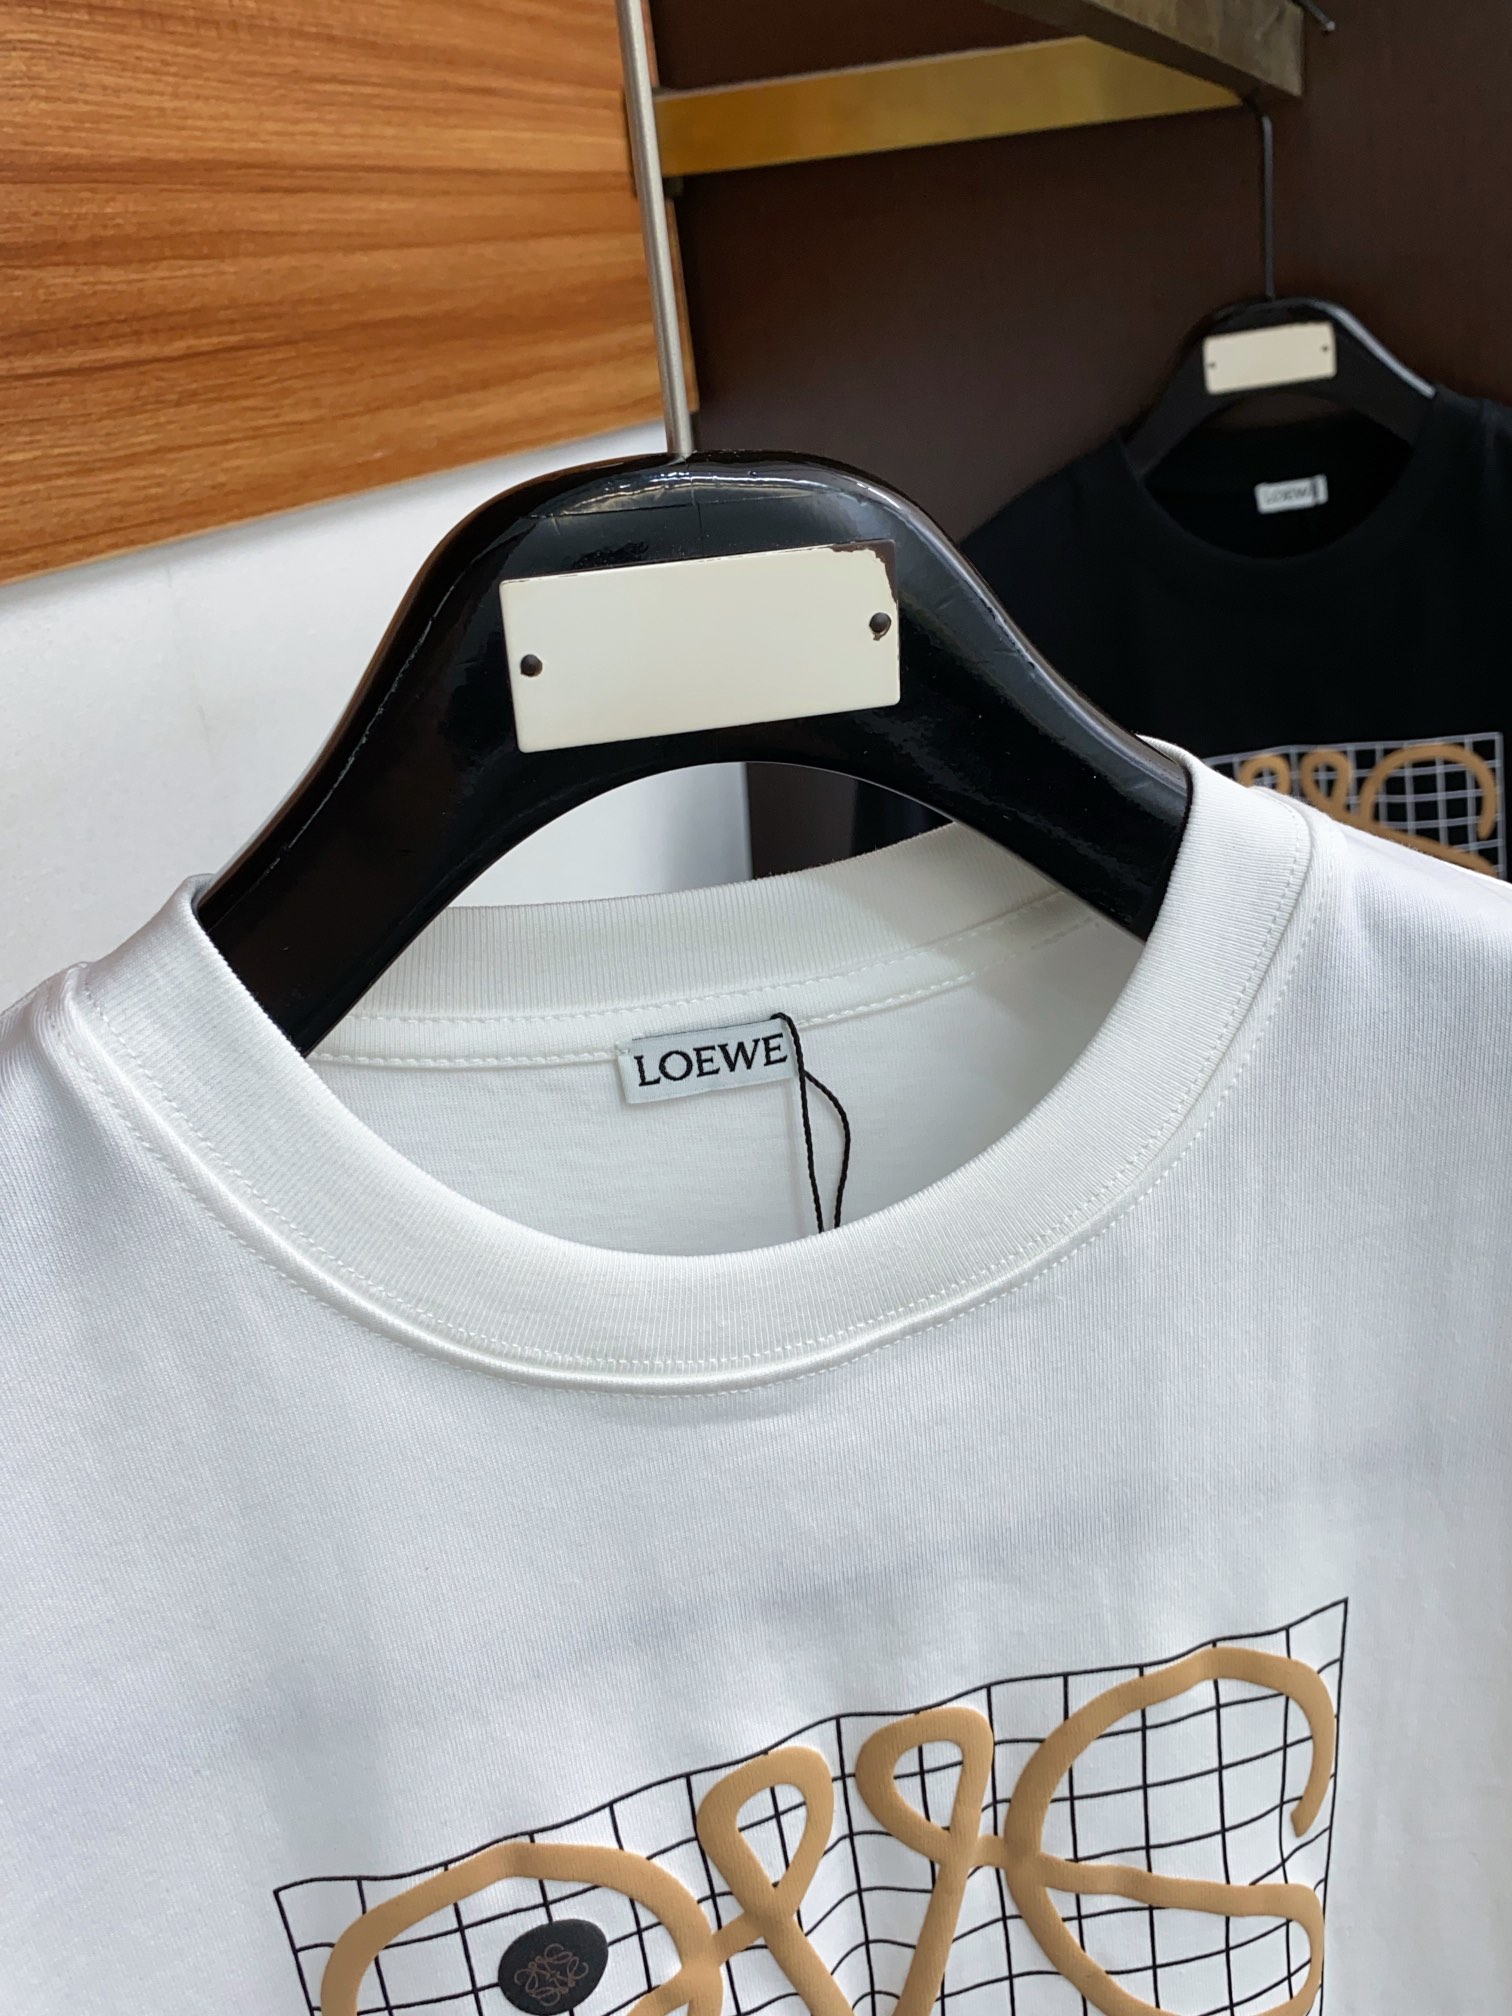 罗意威修身版型M-3xL24春夏早春新款短袖T恤顶级制作工艺进口纯棉面料手感细腻每个字母饱满立体清晰,一